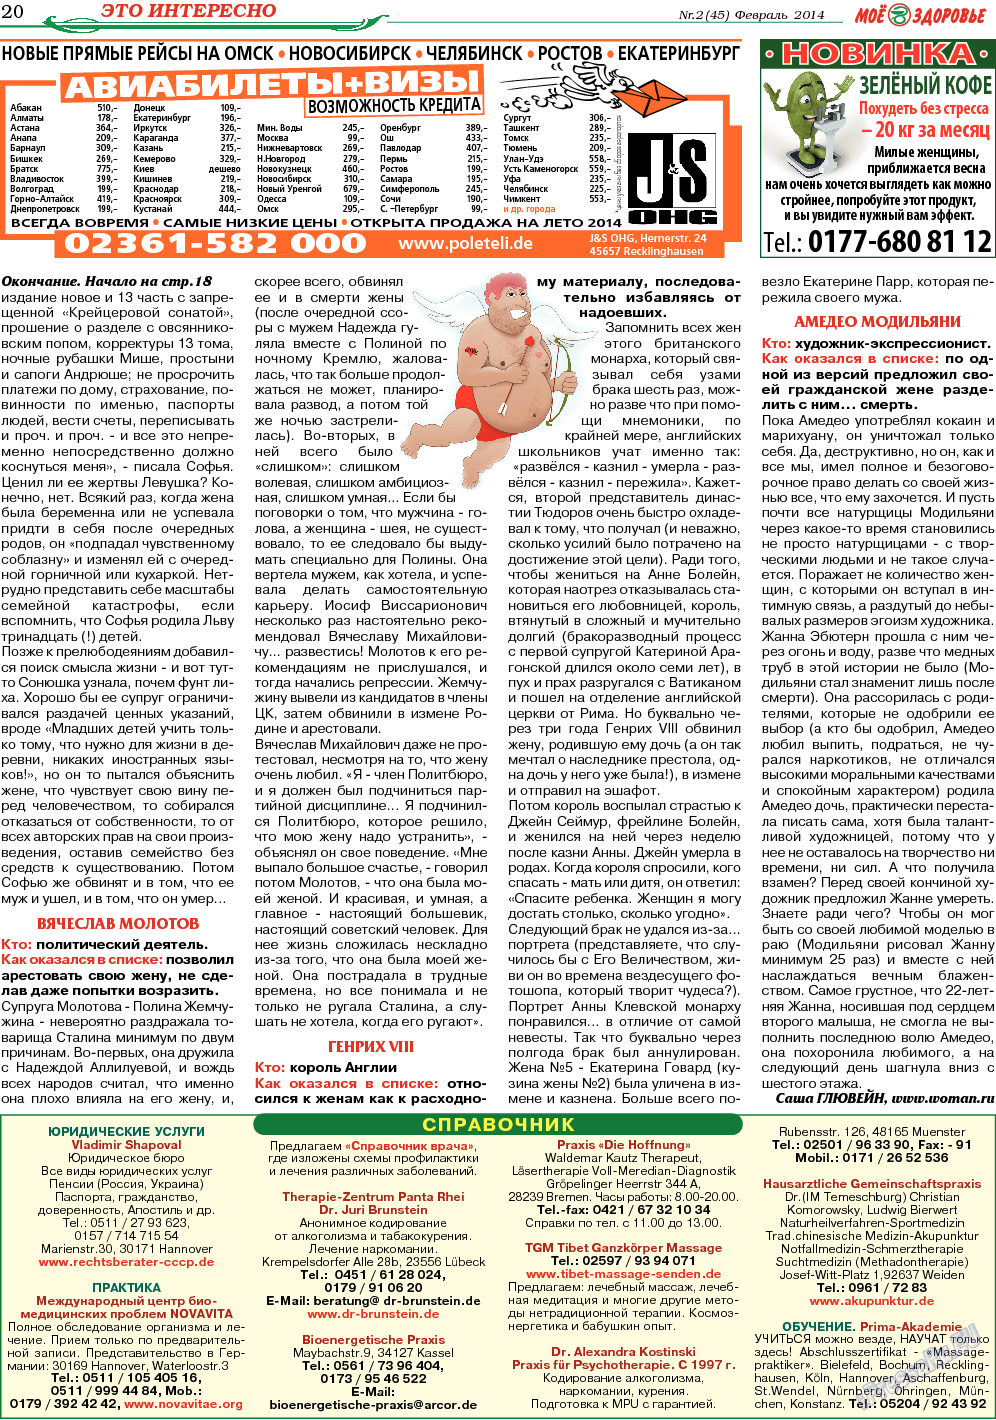 Кругозор, газета. 2014 №2 стр.20